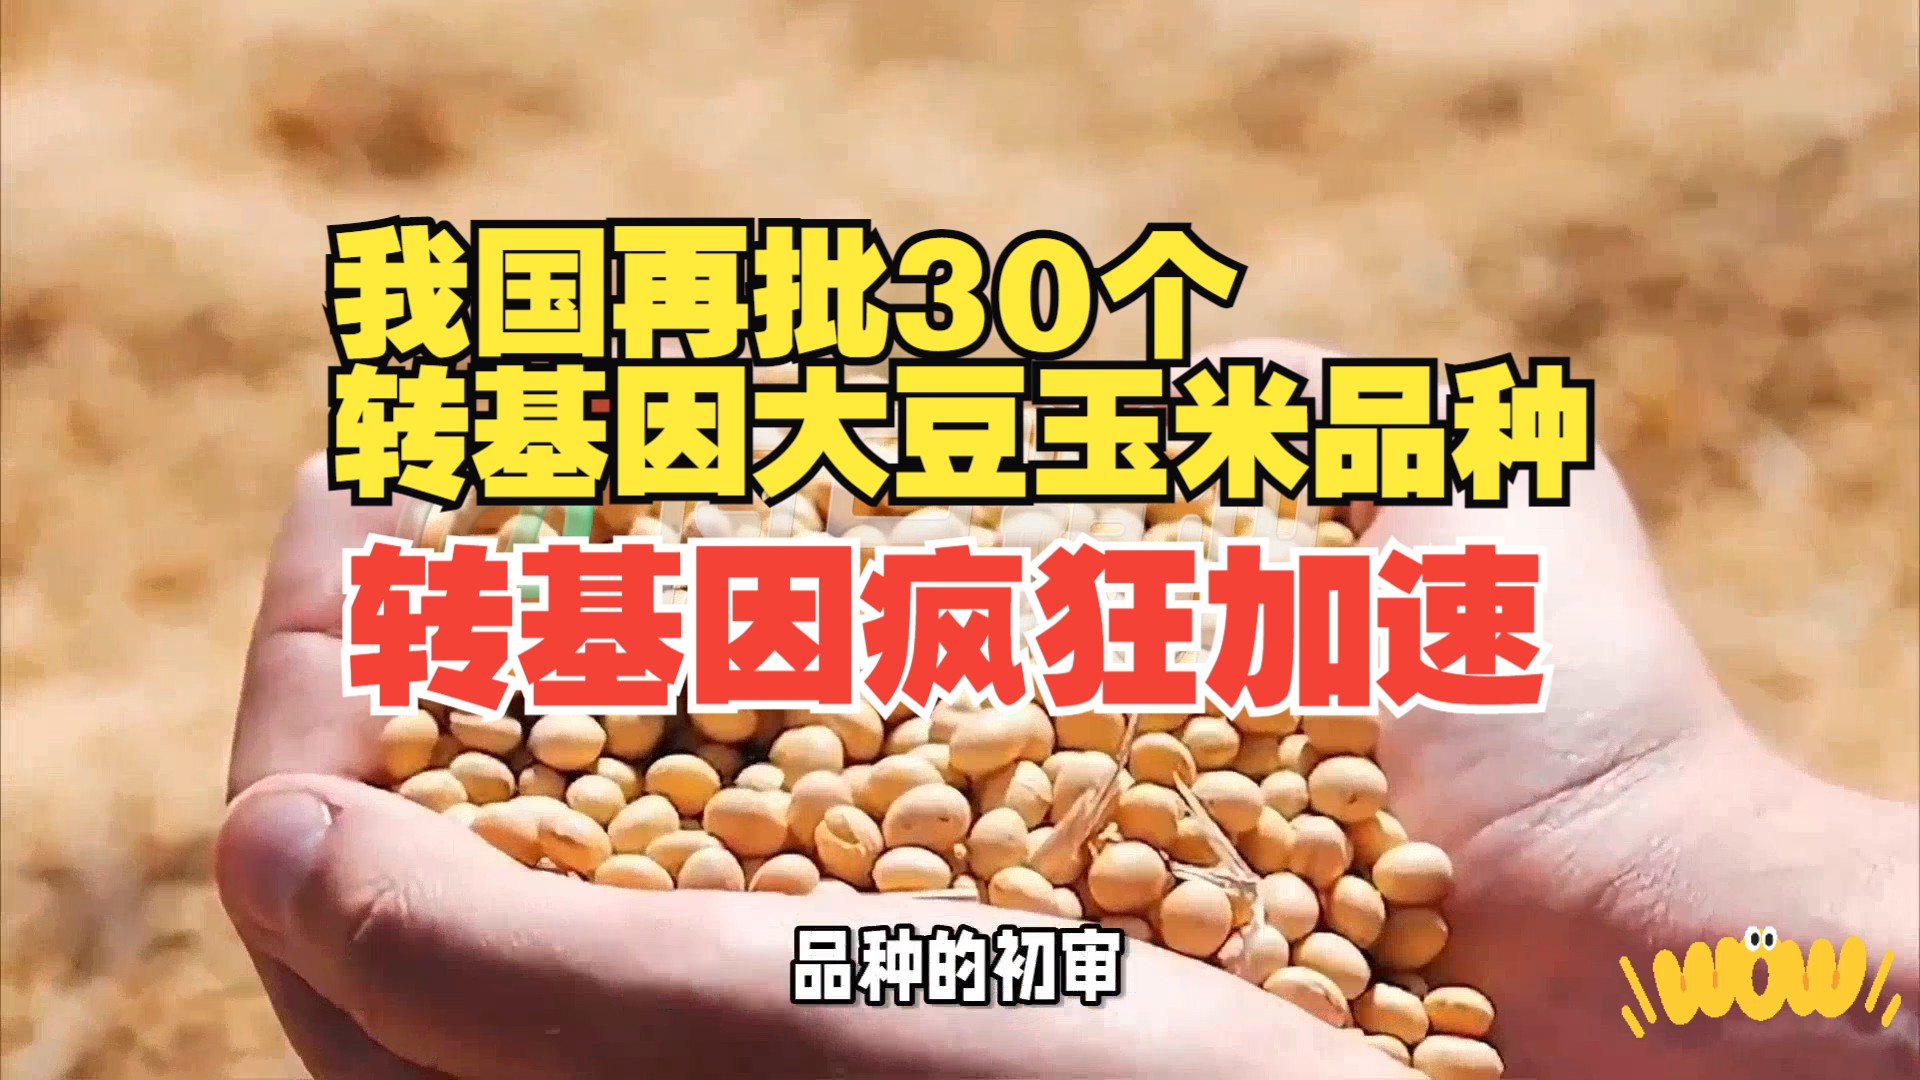 中黄901大豆品种图片